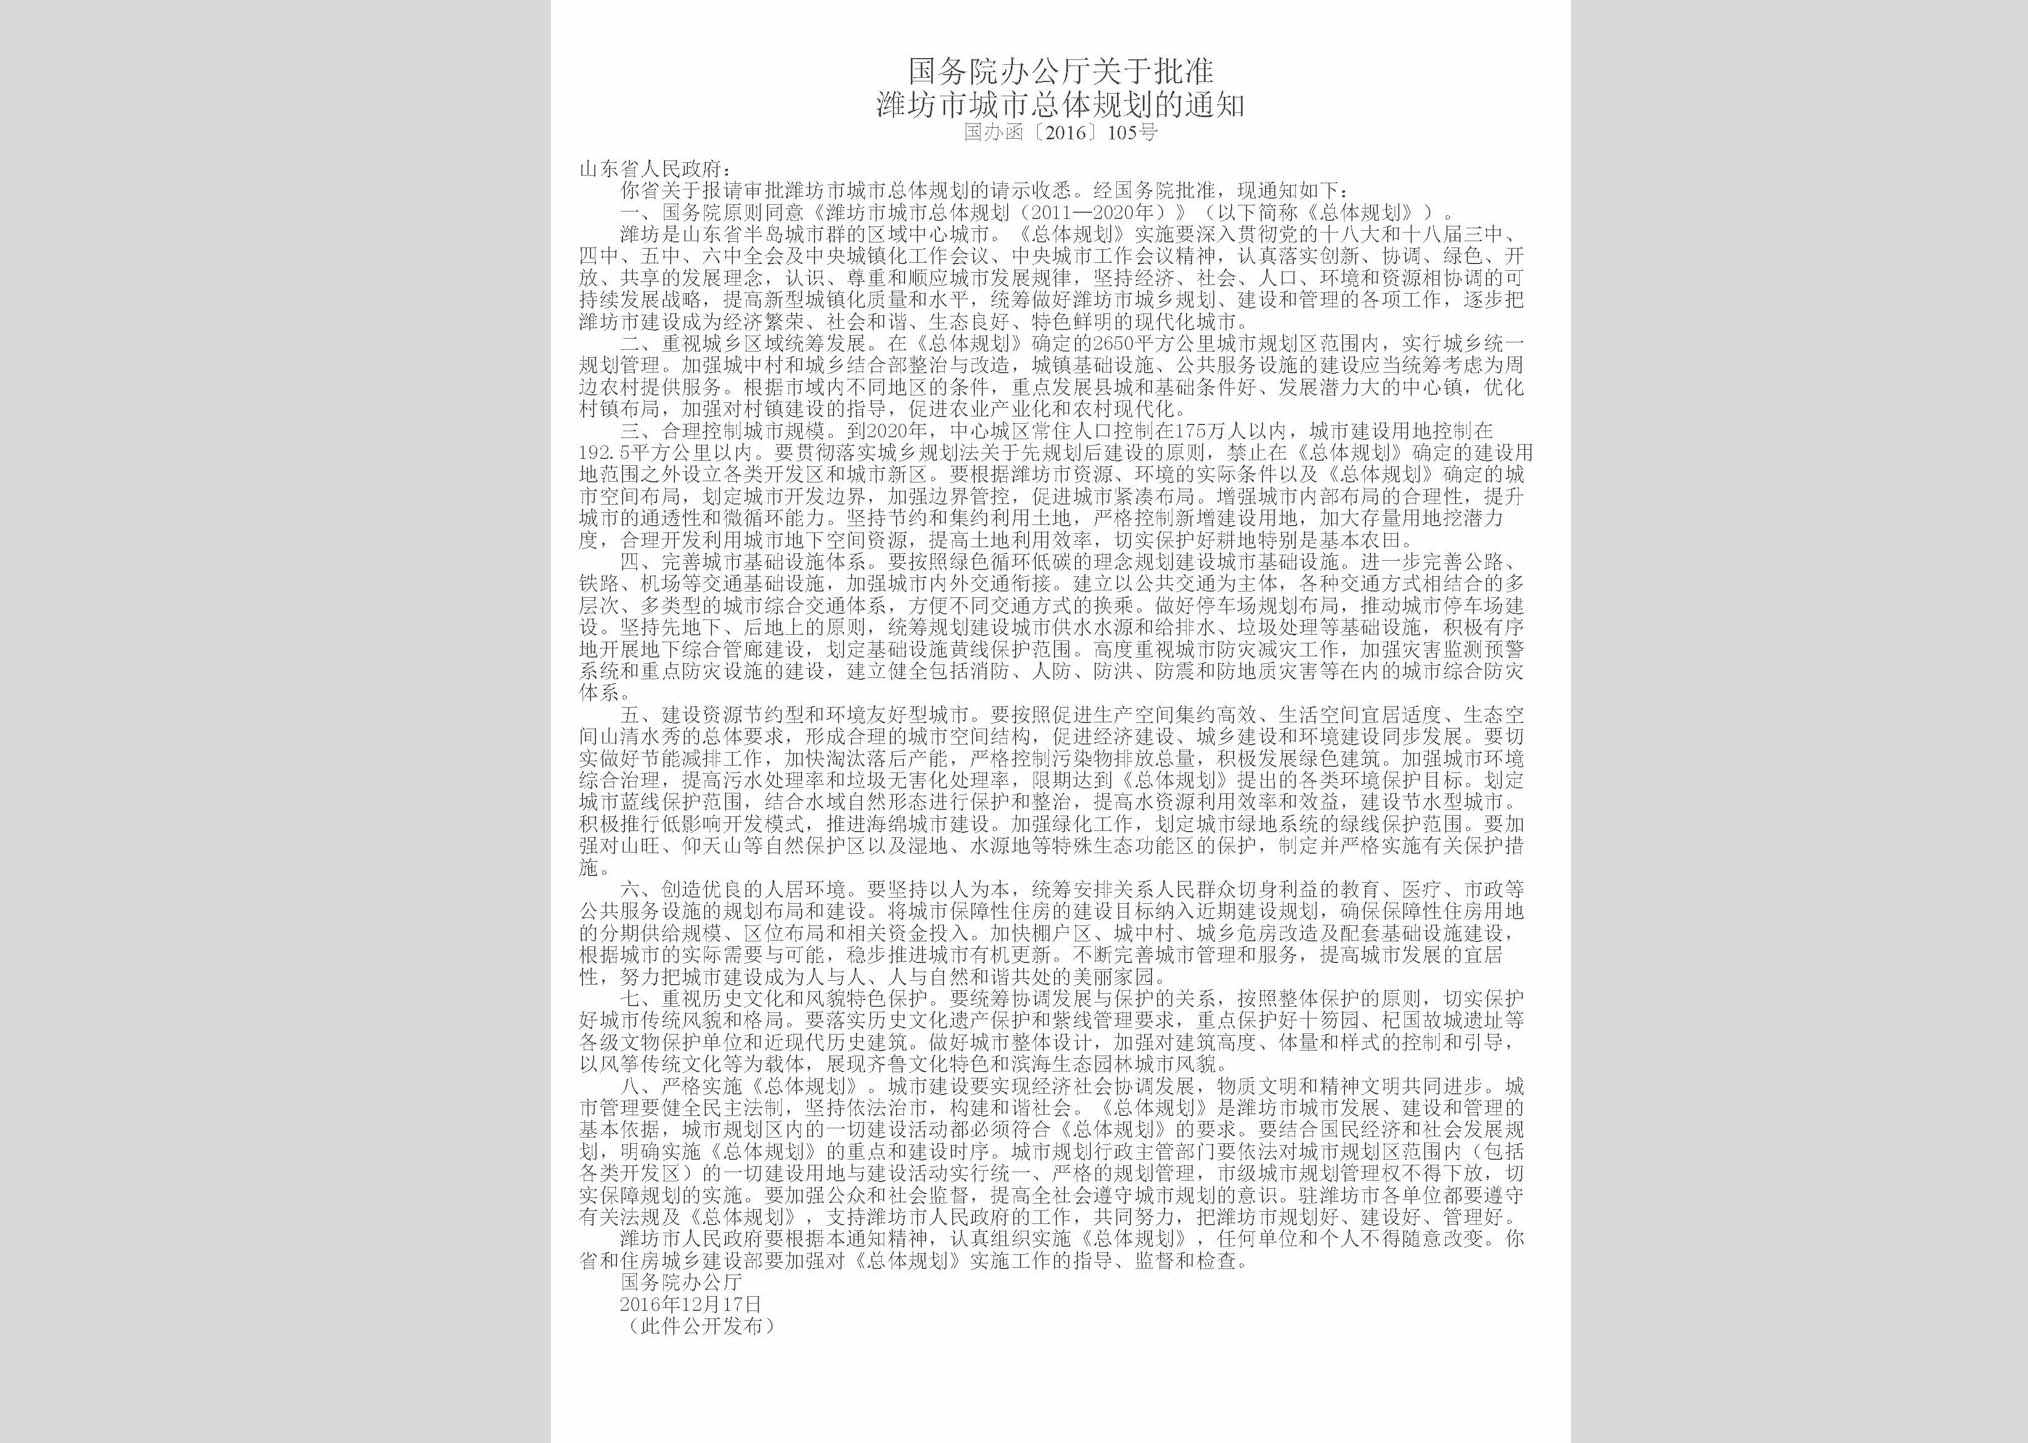 国办函[2016]105号：国务院办公厅关于批准潍坊市城市总体规划的通知